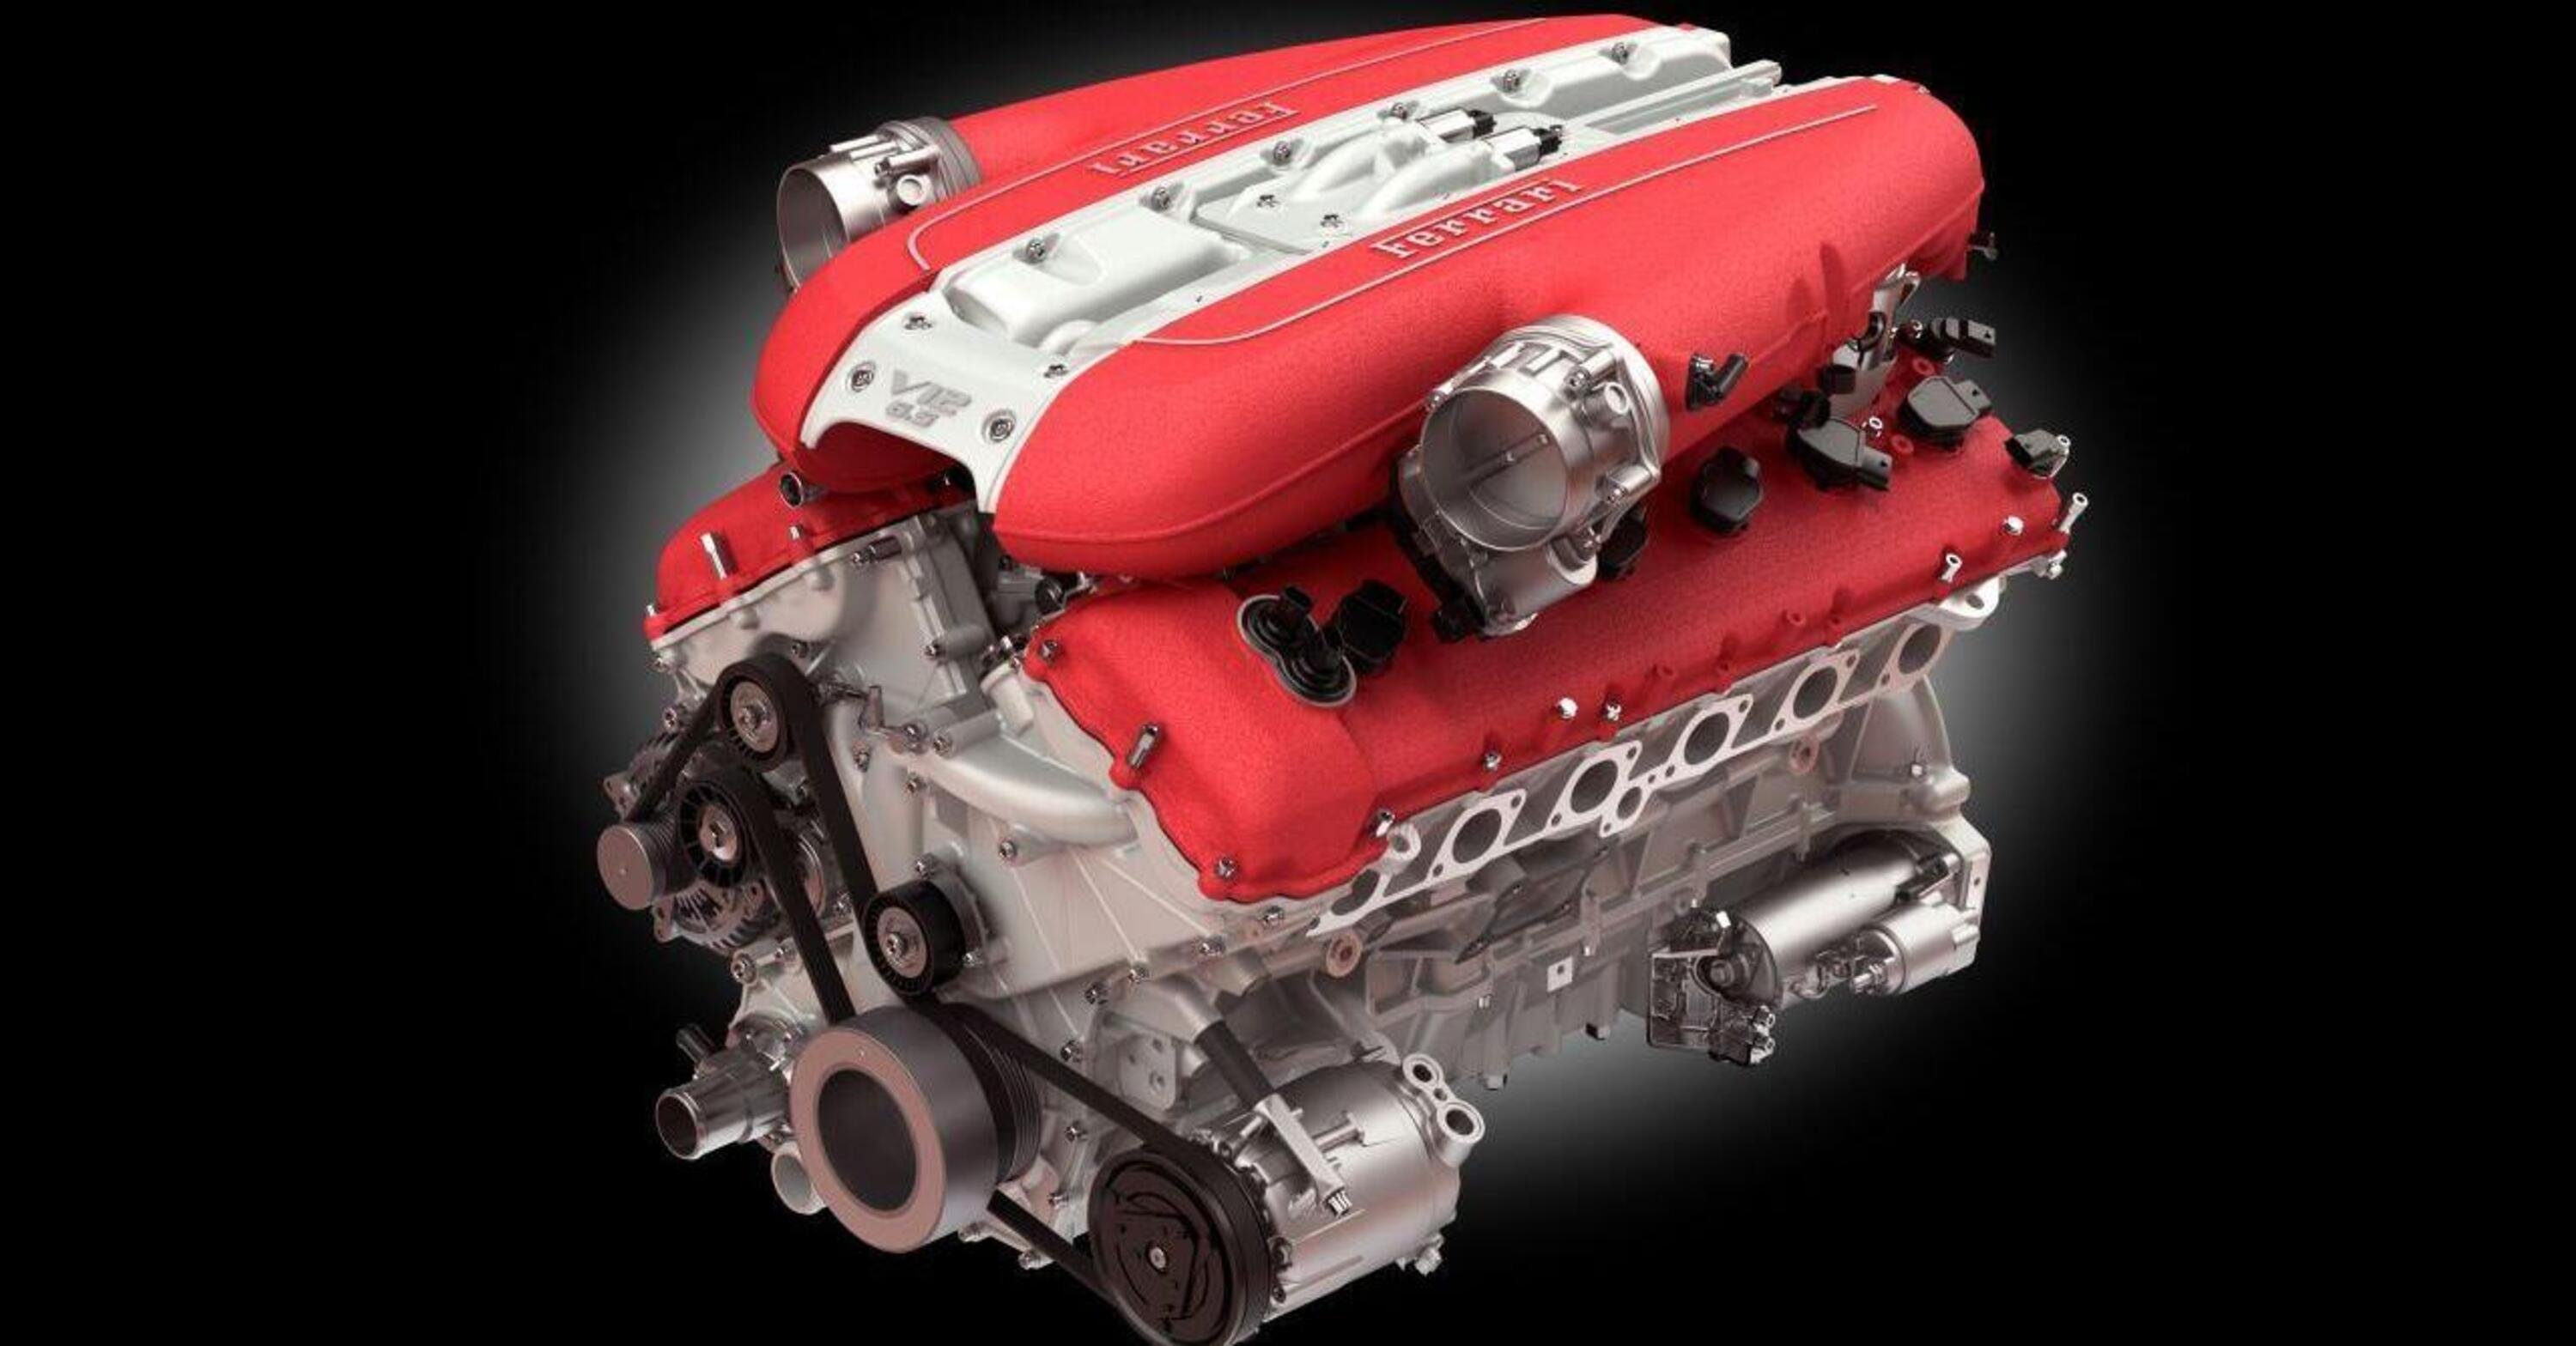 Video ipnotici: come si costruisce un motore Ferrari? 